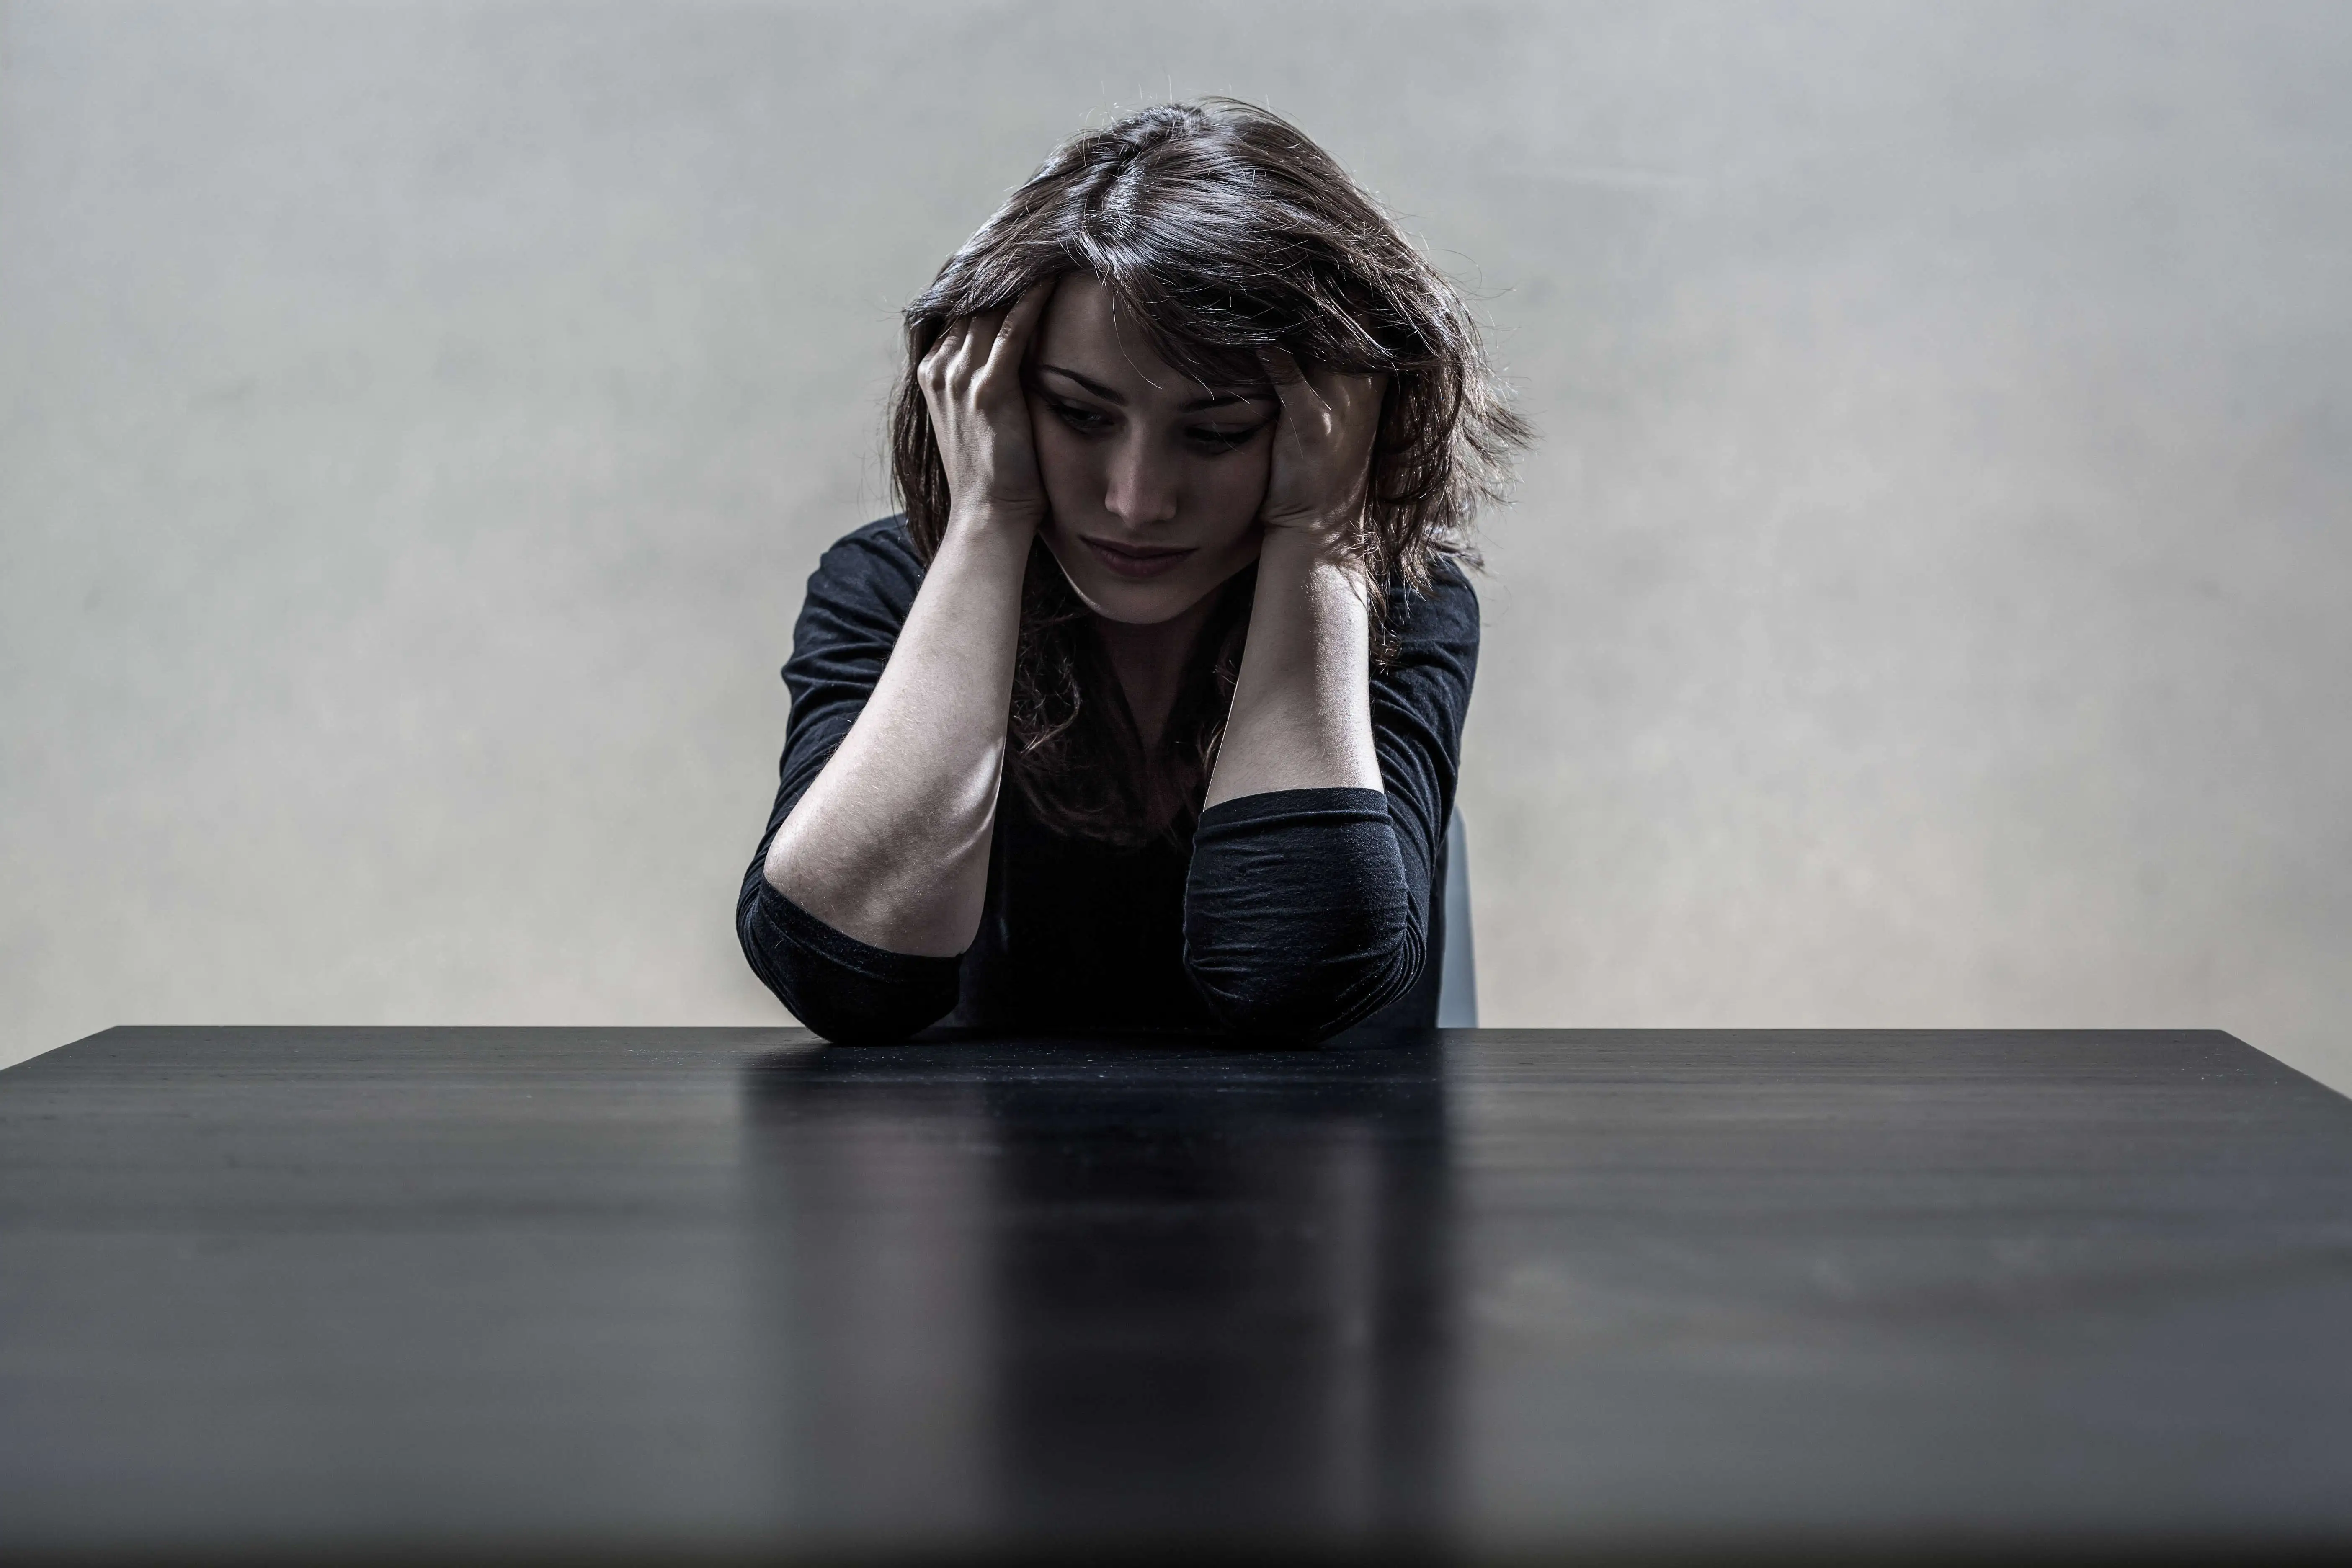 Стресс в повседневной жизни приводит к усилению боли у женщин с синдромом фибромиалгии: исследование роли кортизола и альфа-амилазы